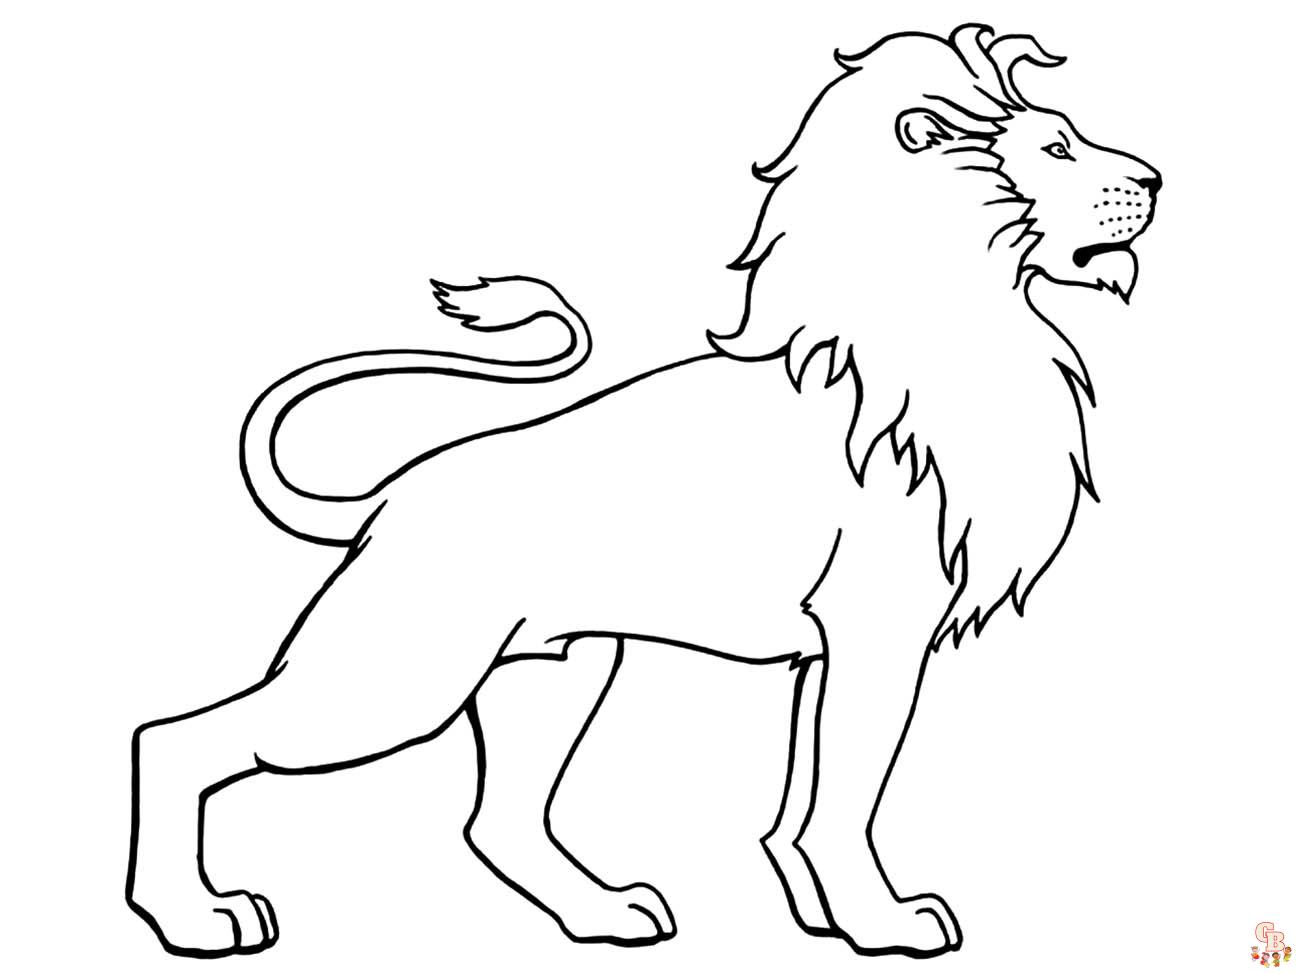 Coloriage Lion Modèles pour Enfants, Adultes et Activités Scolaires